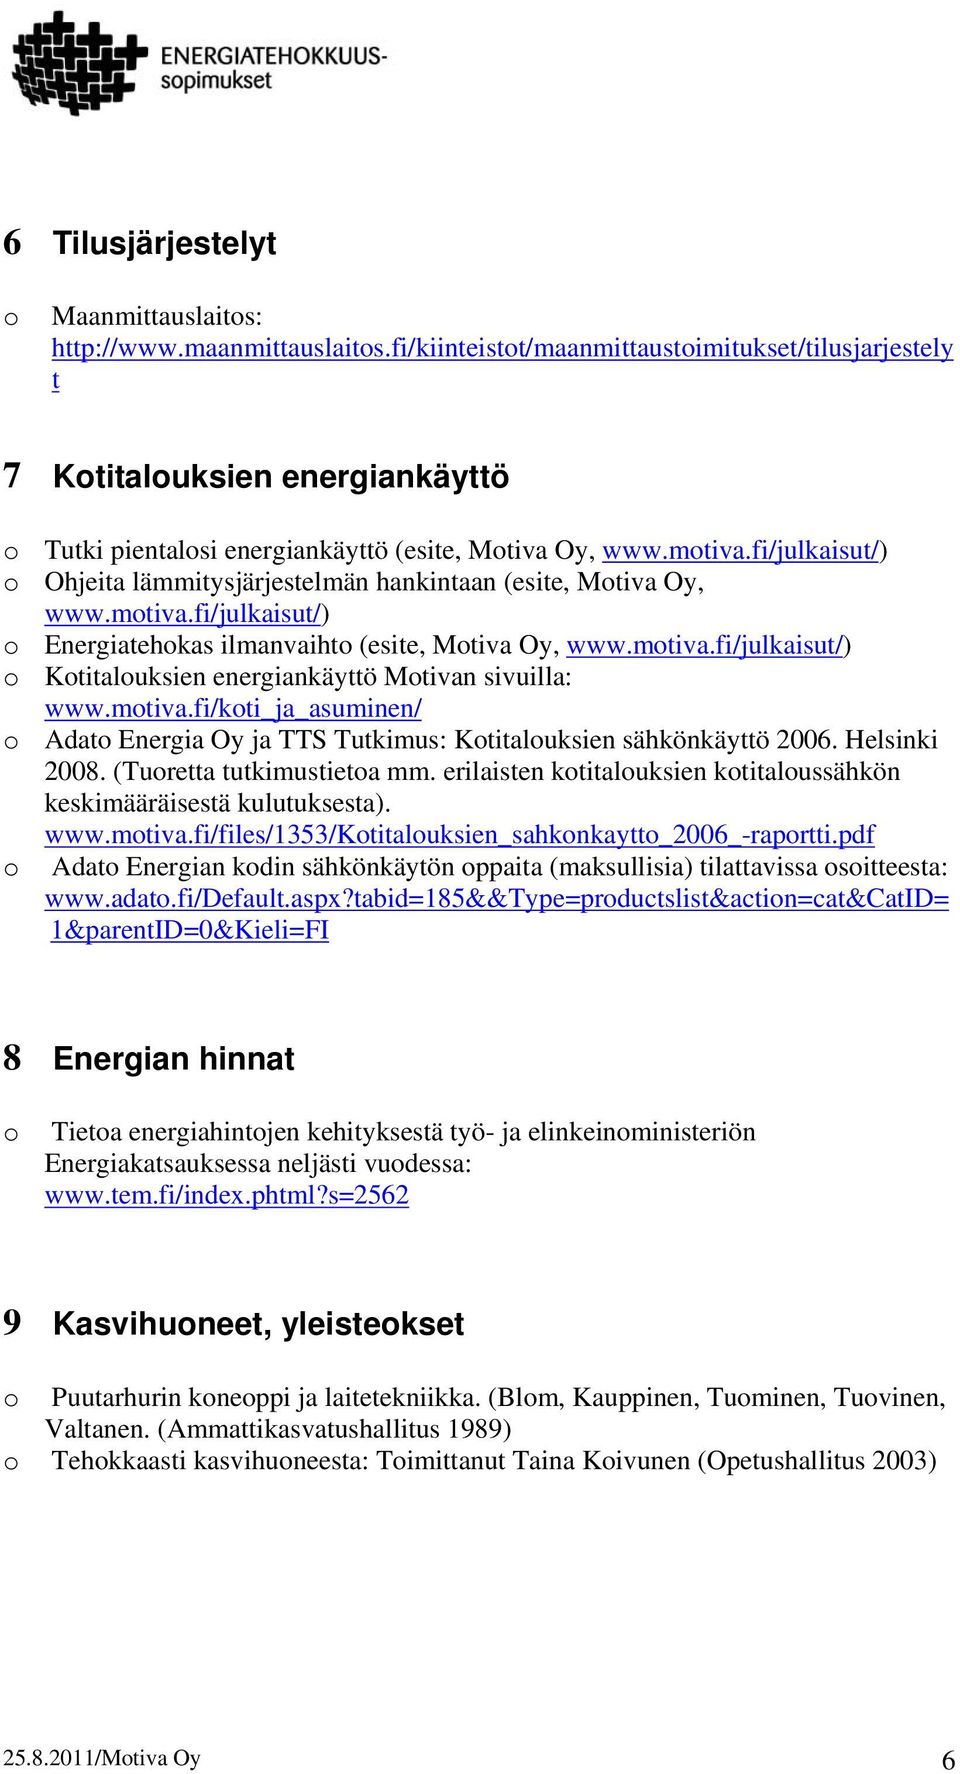 fi/julkaisut/) Ohjeita lämmitysjärjestelmän hankintaan (esite, Mtiva Oy, www.mtiva.fi/julkaisut/) Energiatehkas ilmanvaiht (esite, Mtiva Oy, www.mtiva.fi/julkaisut/) Ktitaluksien energiankäyttö Mtivan sivuilla: www.